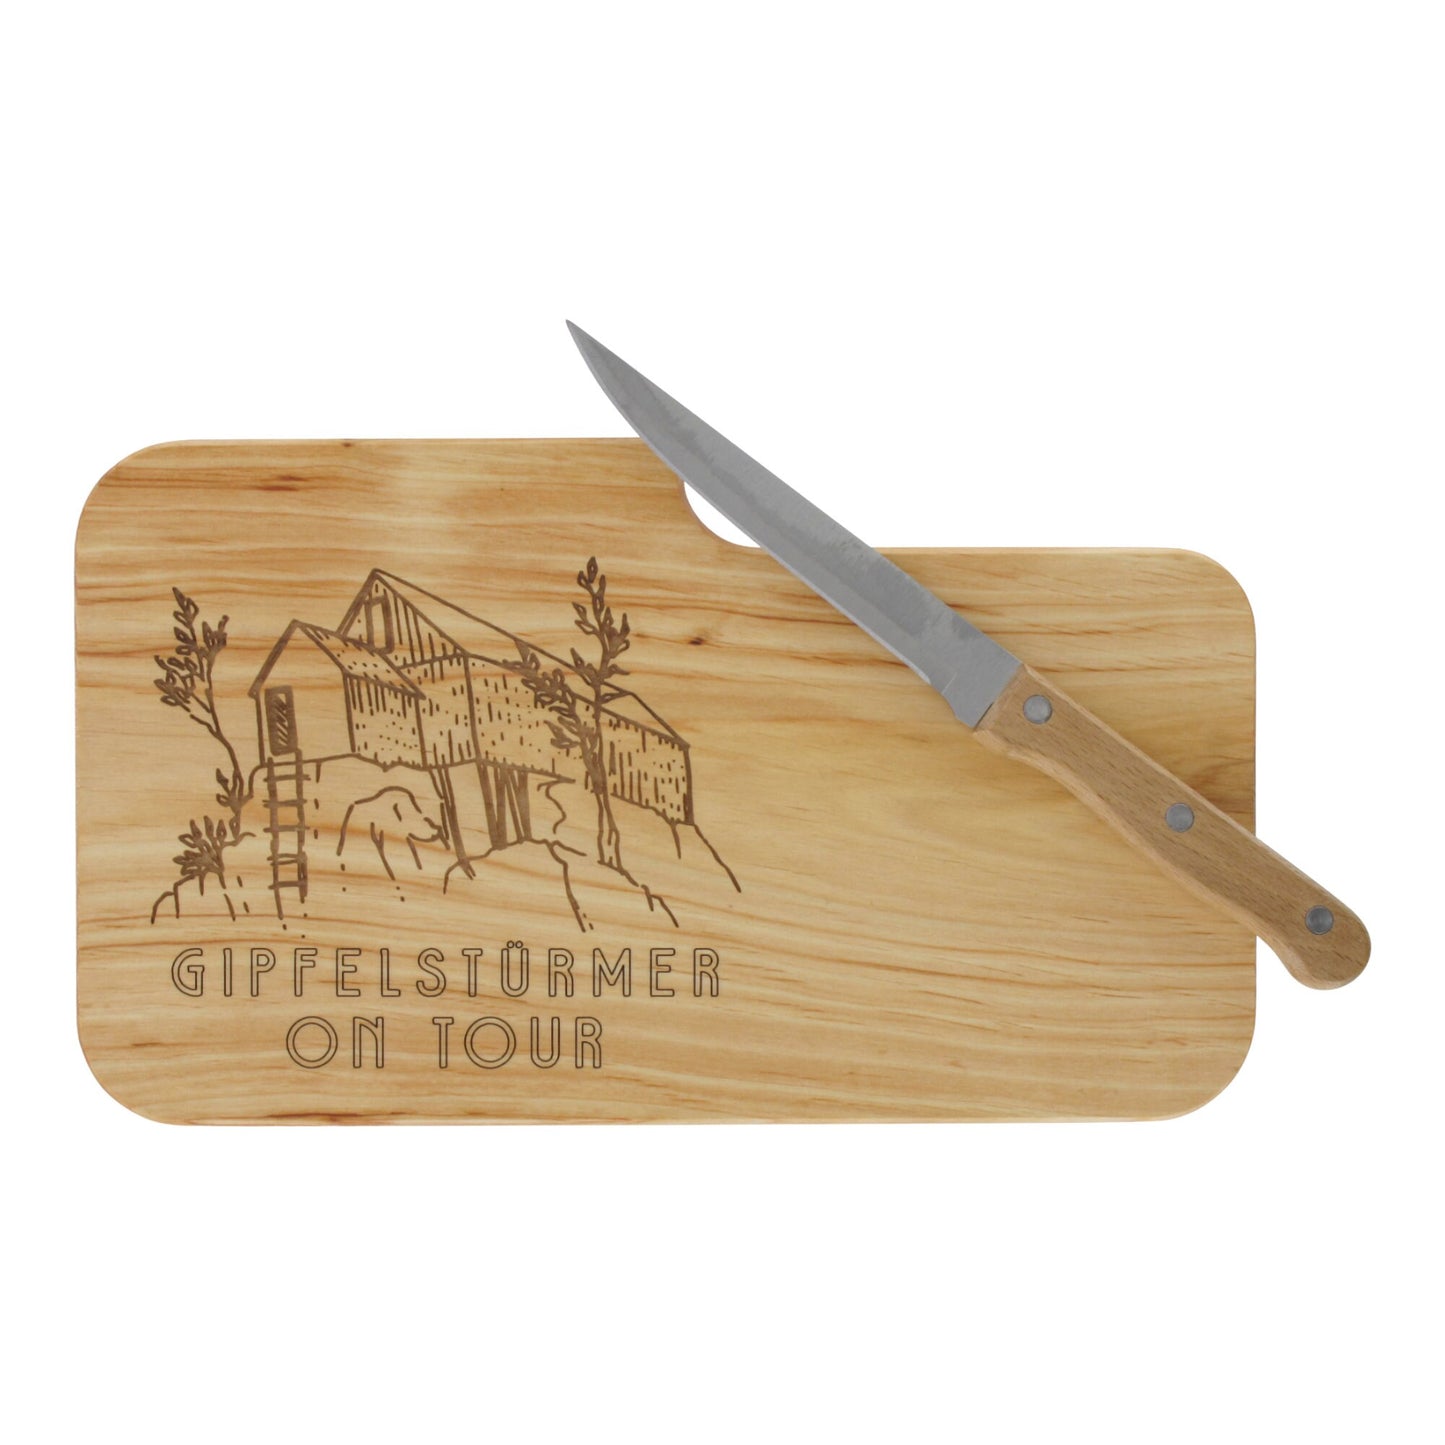 Messerbrett mit Gravur Gipfelstürmer on Tour, Geschenk Wanderer, Schneidbrett Wandern, Brotzeitbrett mit Messer, Jausenbrett